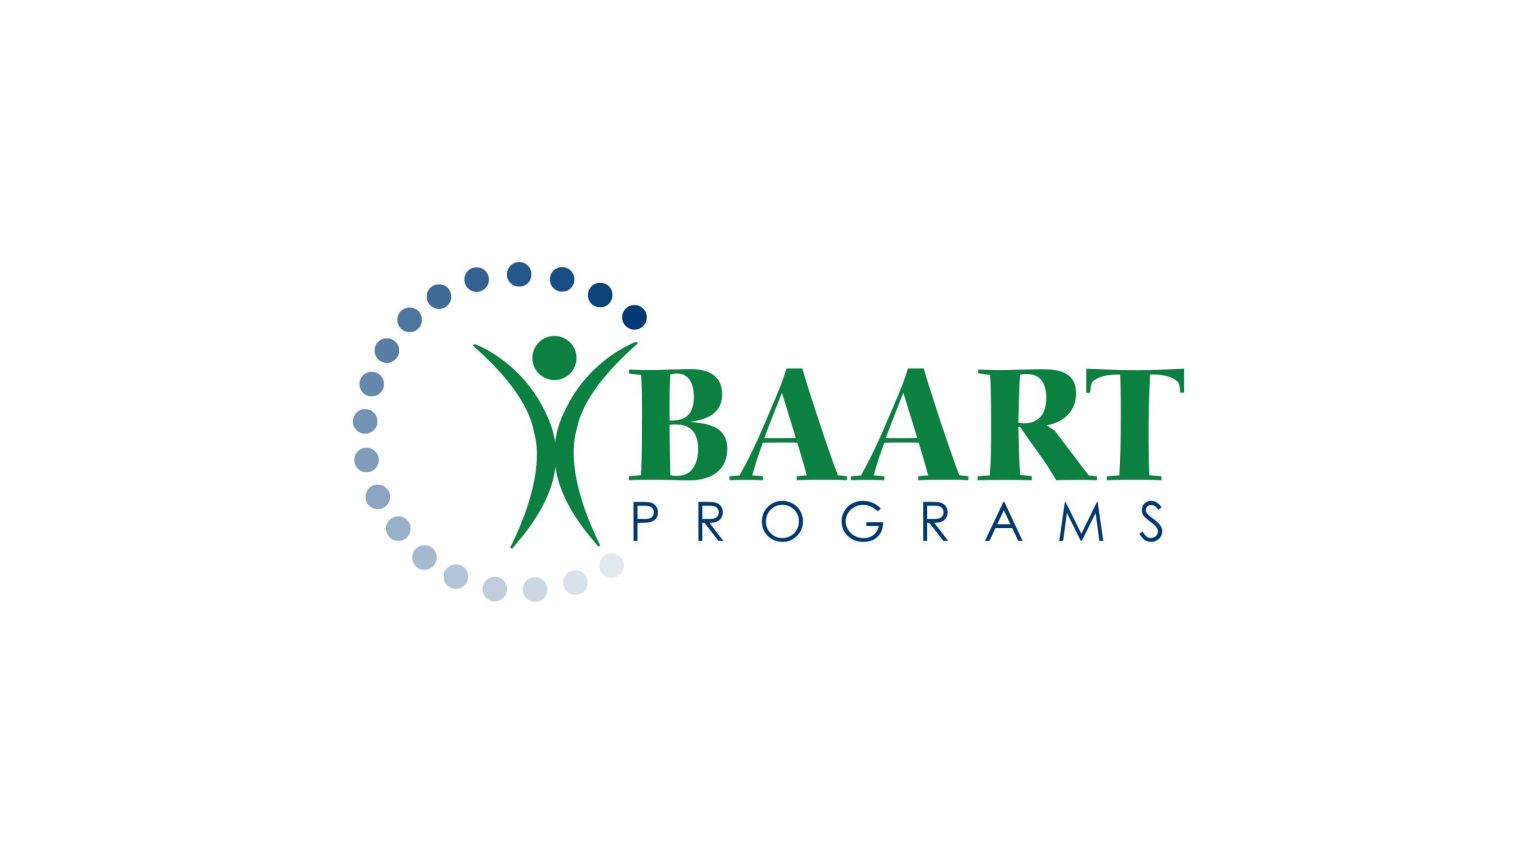 BAART Programs Breaux Bridge